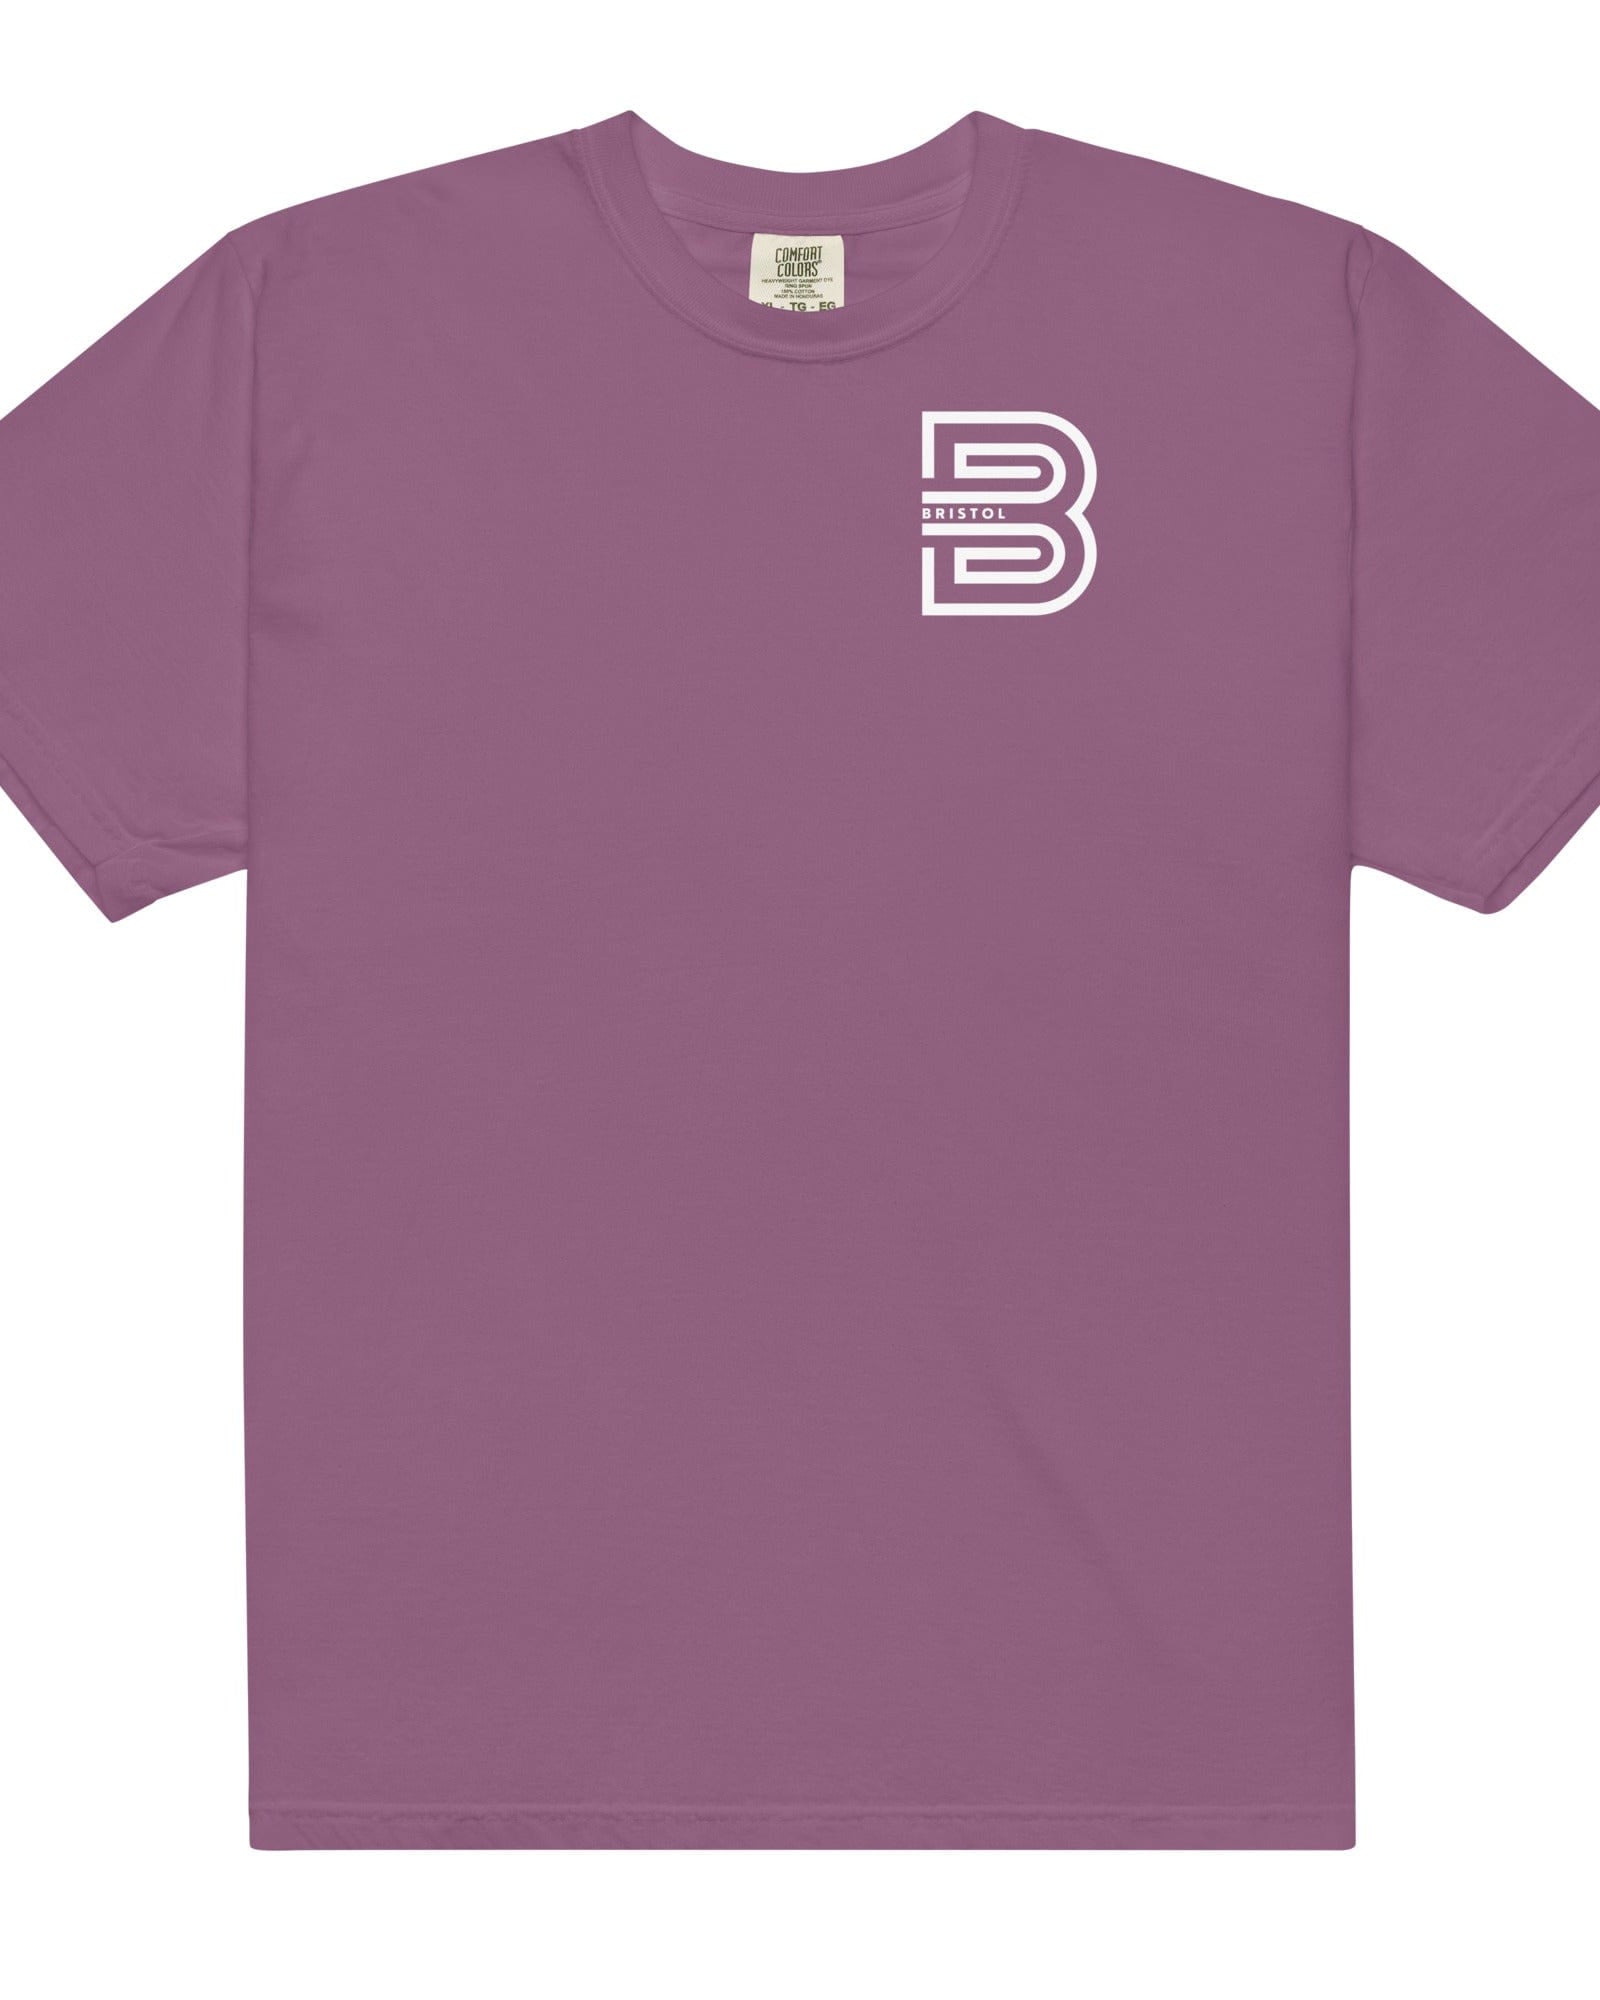 Bristol B T-shirt | Garment-dyed Heavyweight Berry / S Shirts & Tops Jolly & Goode